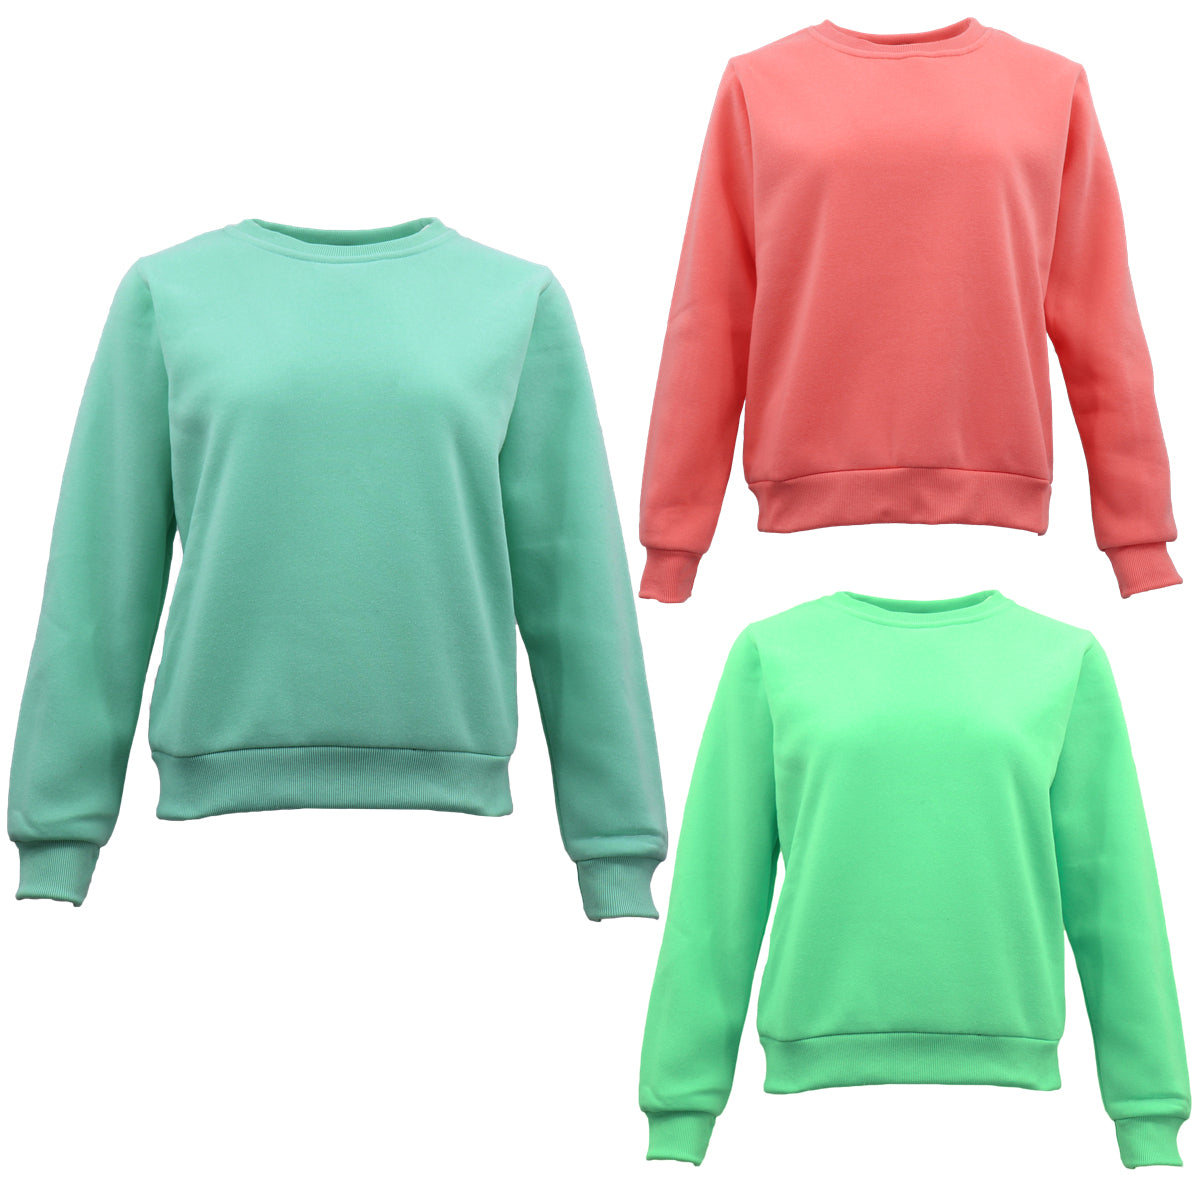 Women's Adult Plain Pullover Fleece Jumper Long Sleeve Crew Neck Sweater Shirt - Zmart Australia